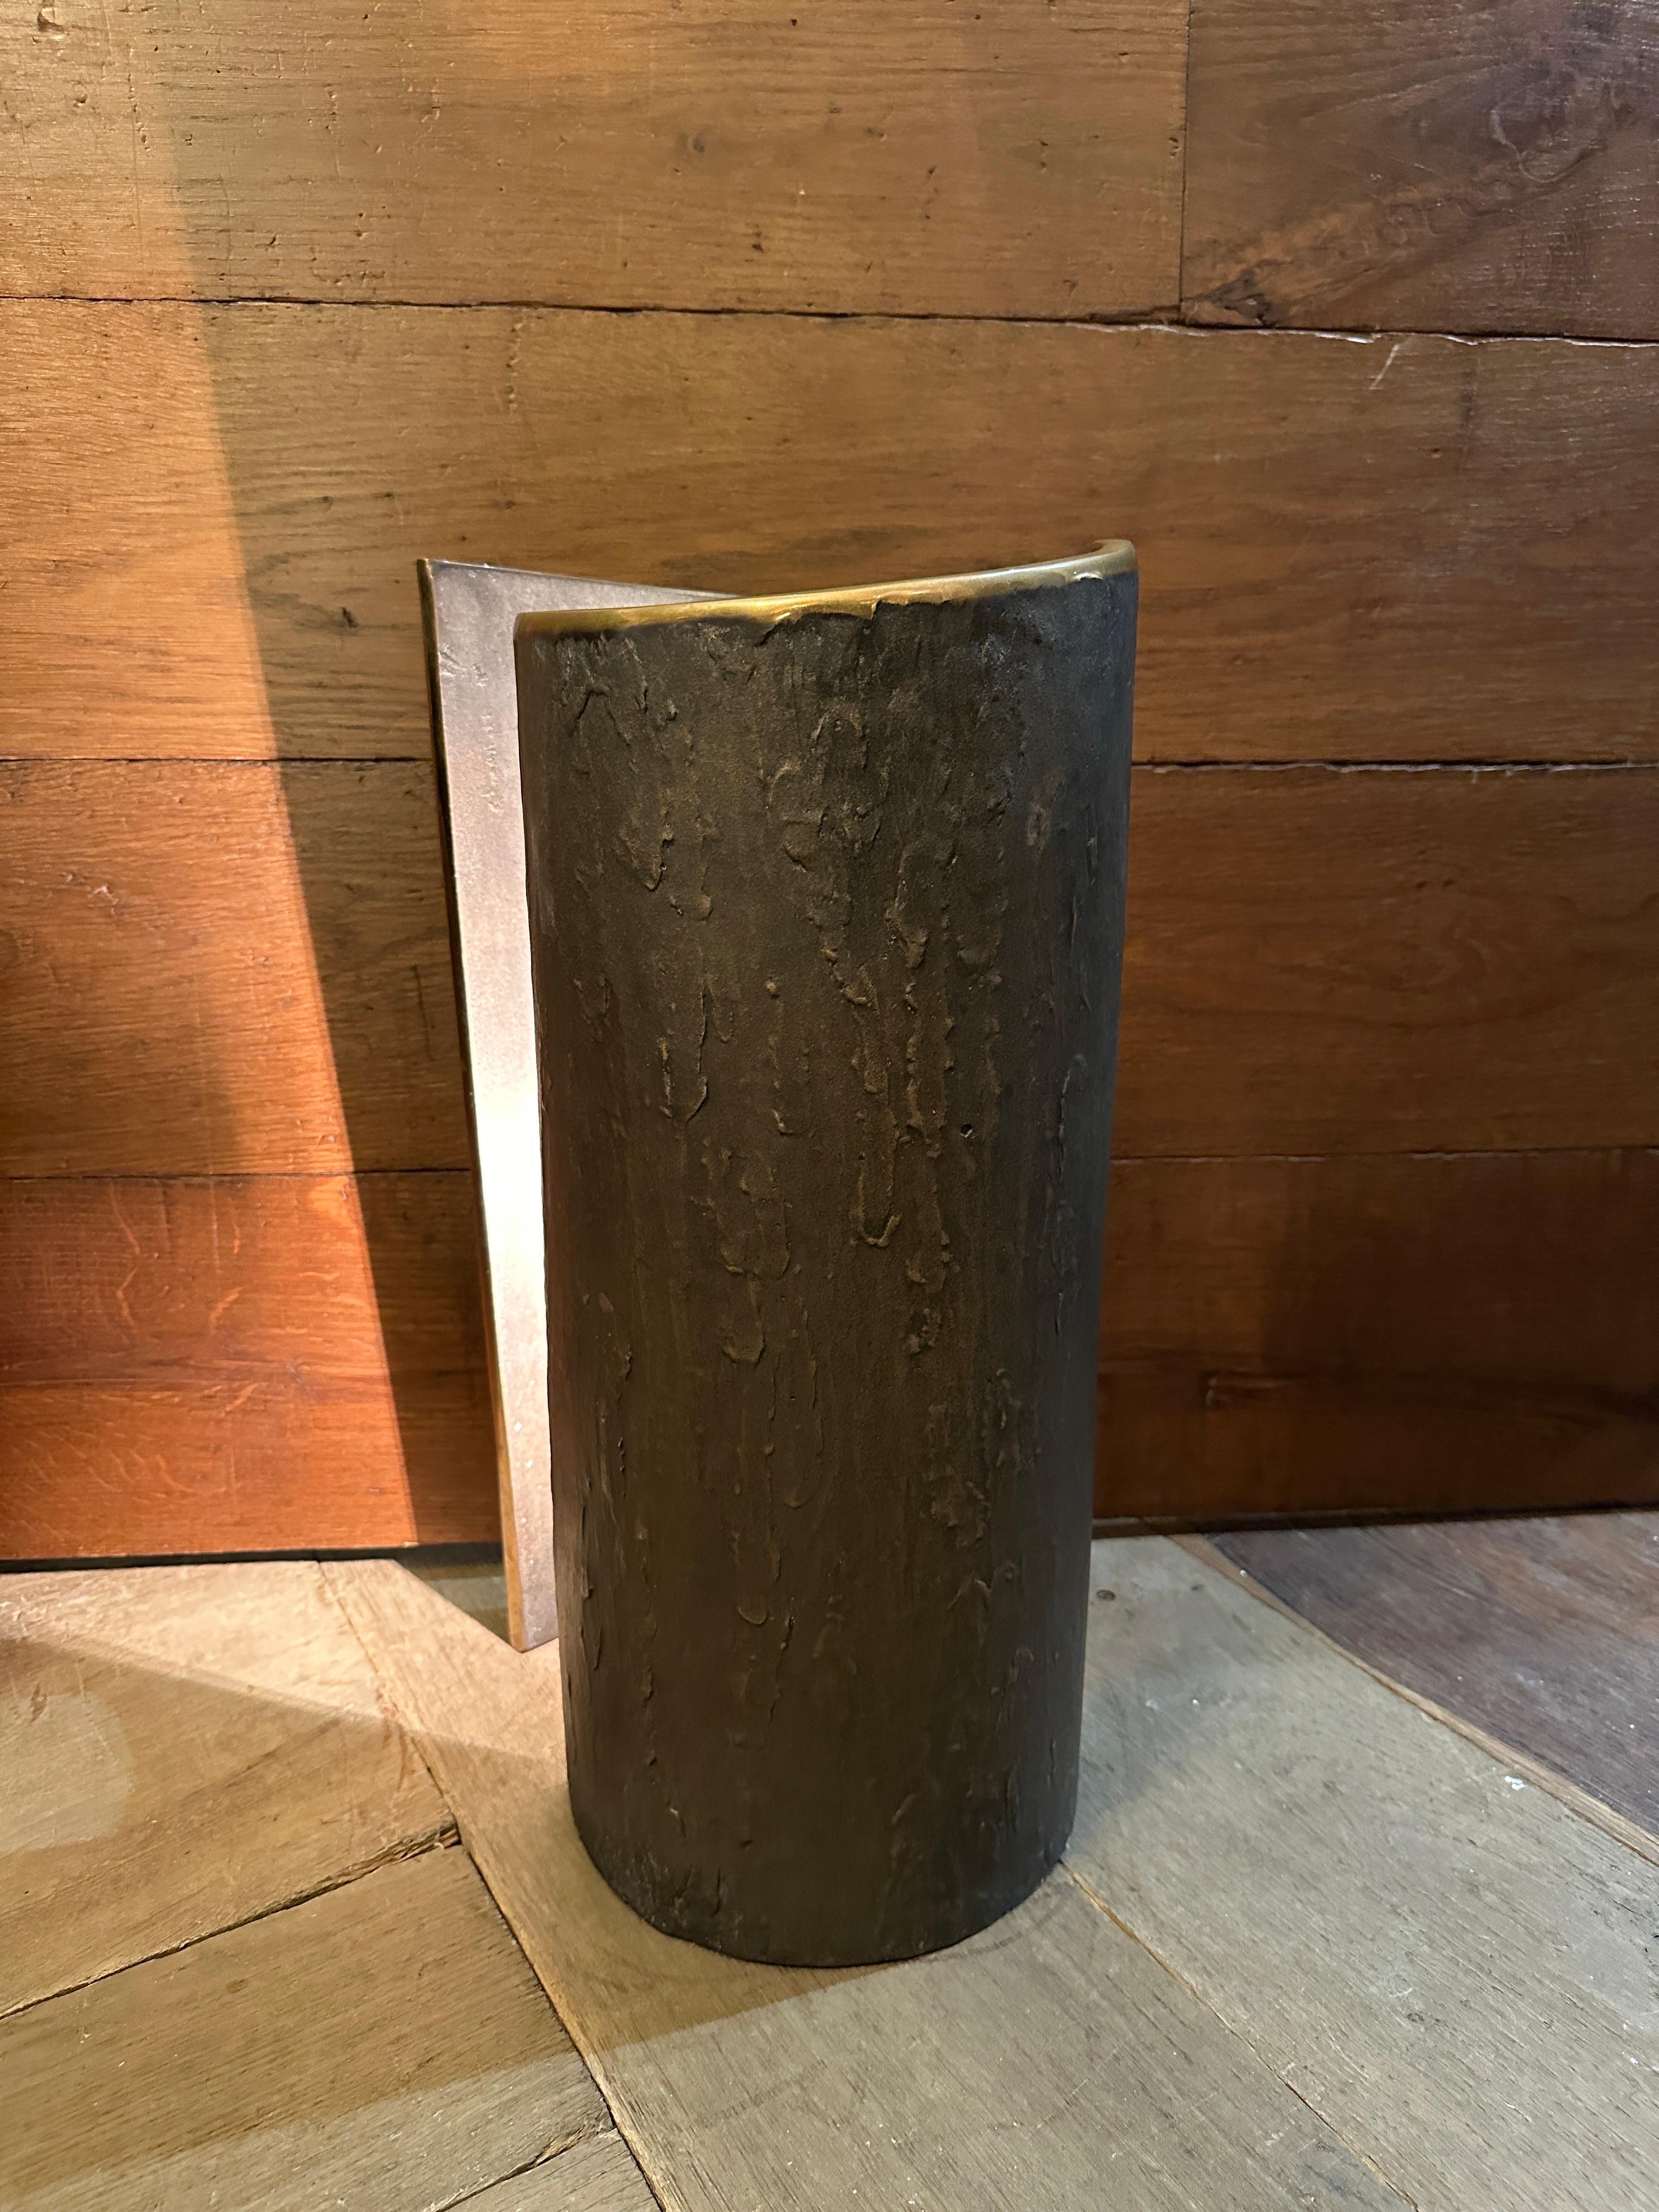 Une grande et substantielle lampe de table Toscana en bronze par Quasar des Pays-Bas. De forme sculpturale, elle comporte deux plaques rotatives qui pivotent l'une autour de l'autre grâce à un mécanisme intérieur permettant de projeter la lumière